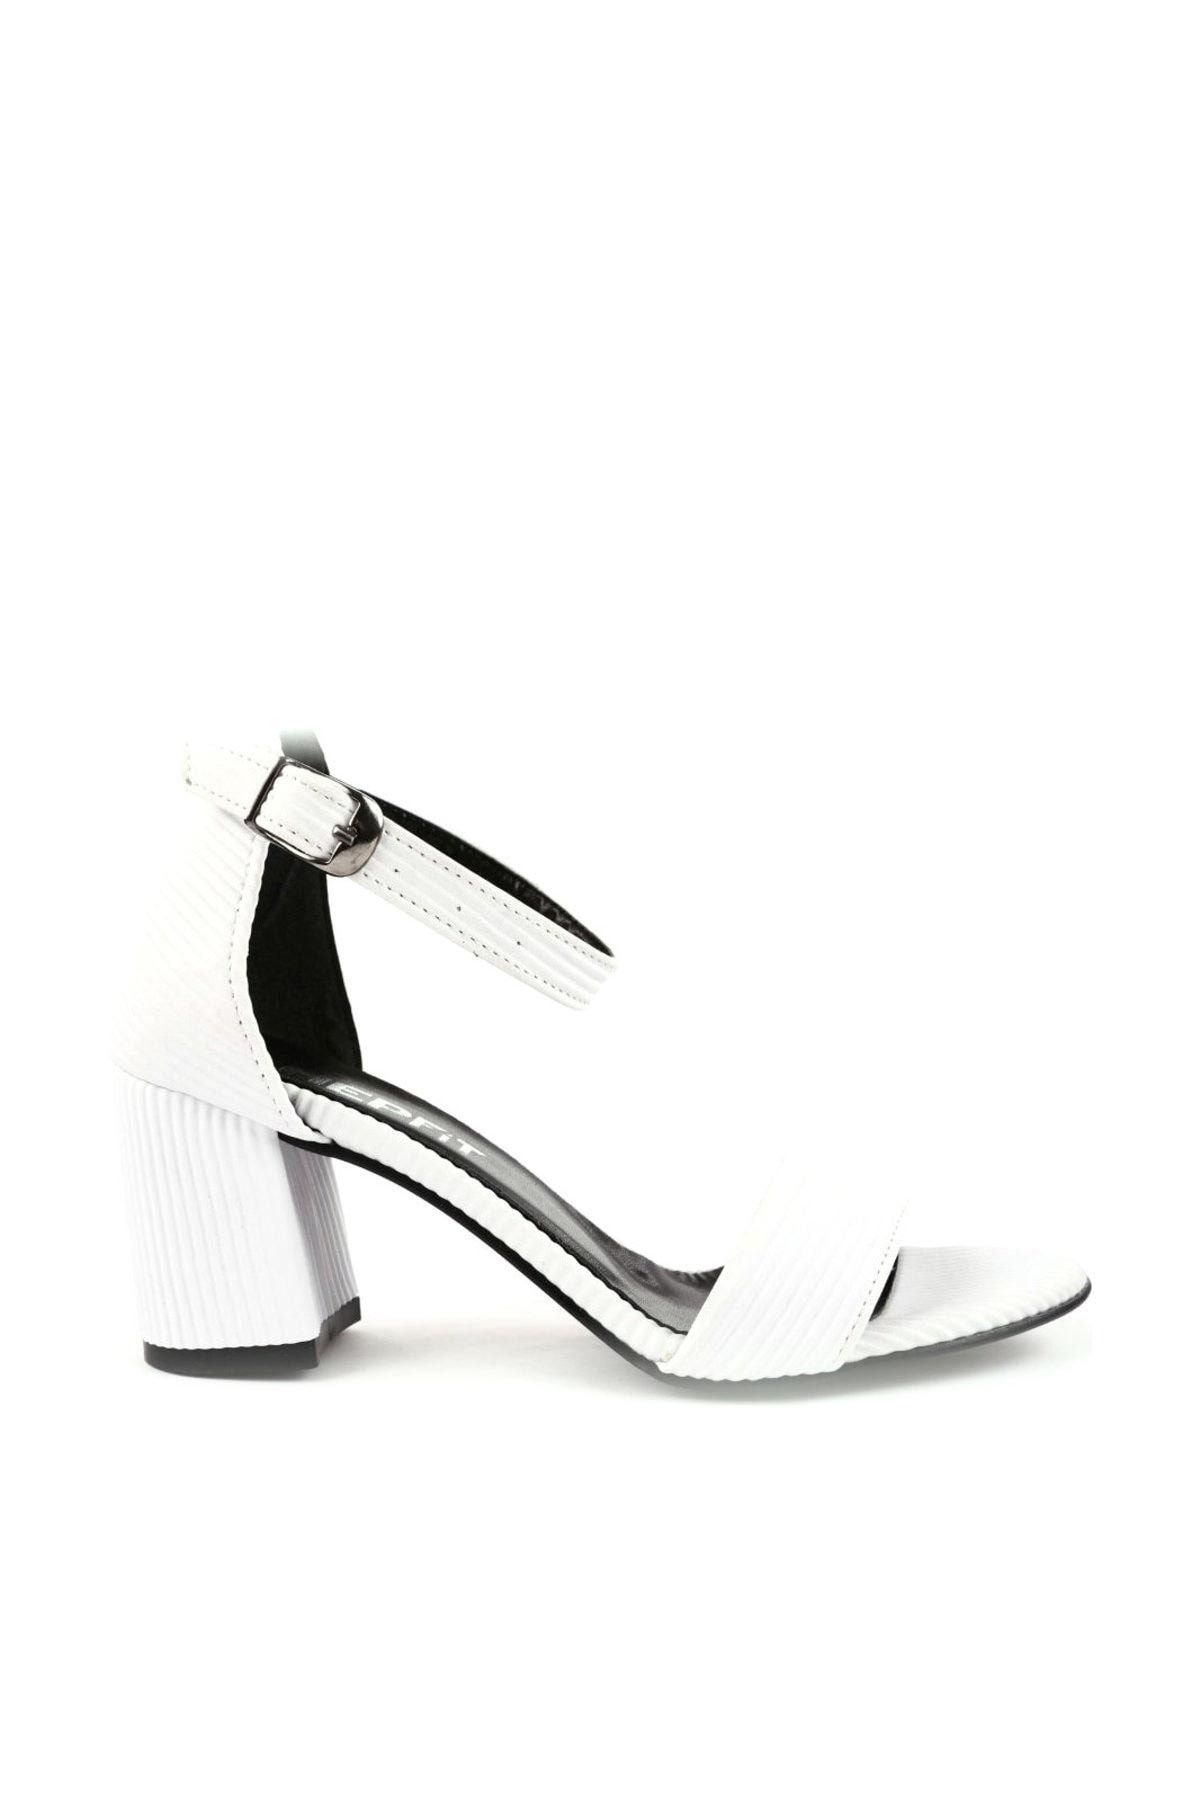 Hepfit Beyaz Lazerli Kadın Topuklu Ayakkabı 2013-05-1604